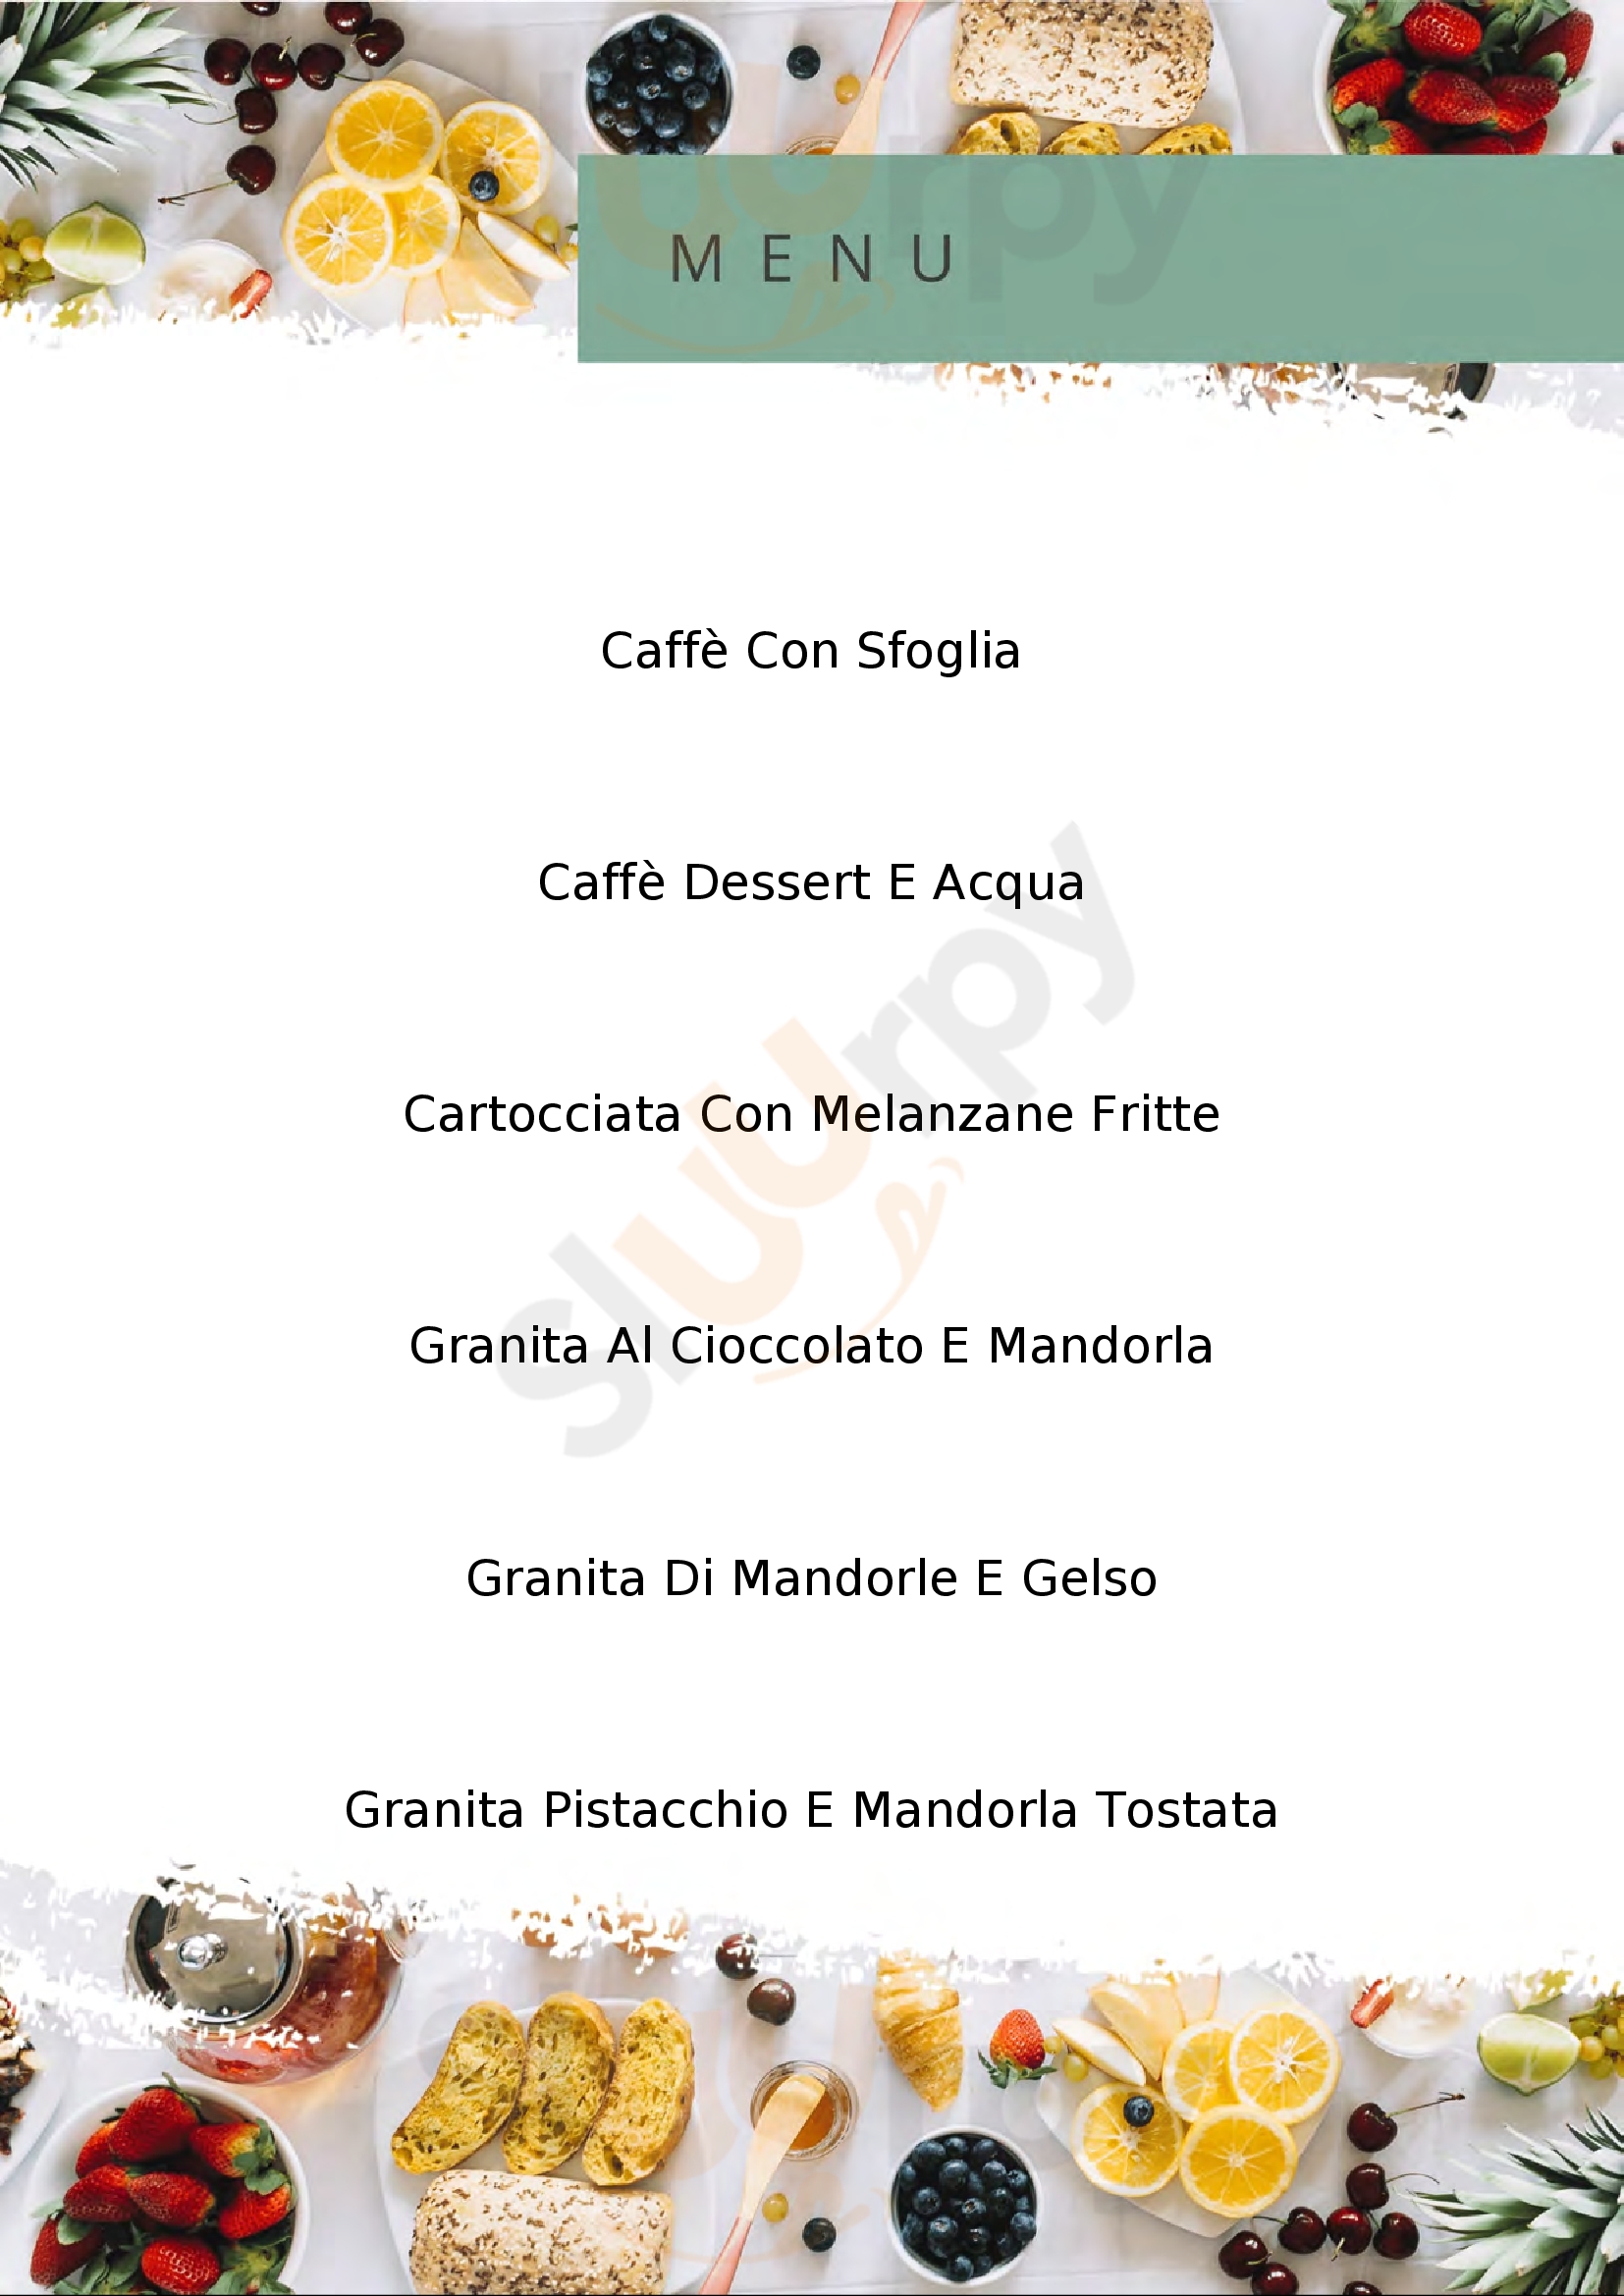 Caffè Etna Catania menù 1 pagina